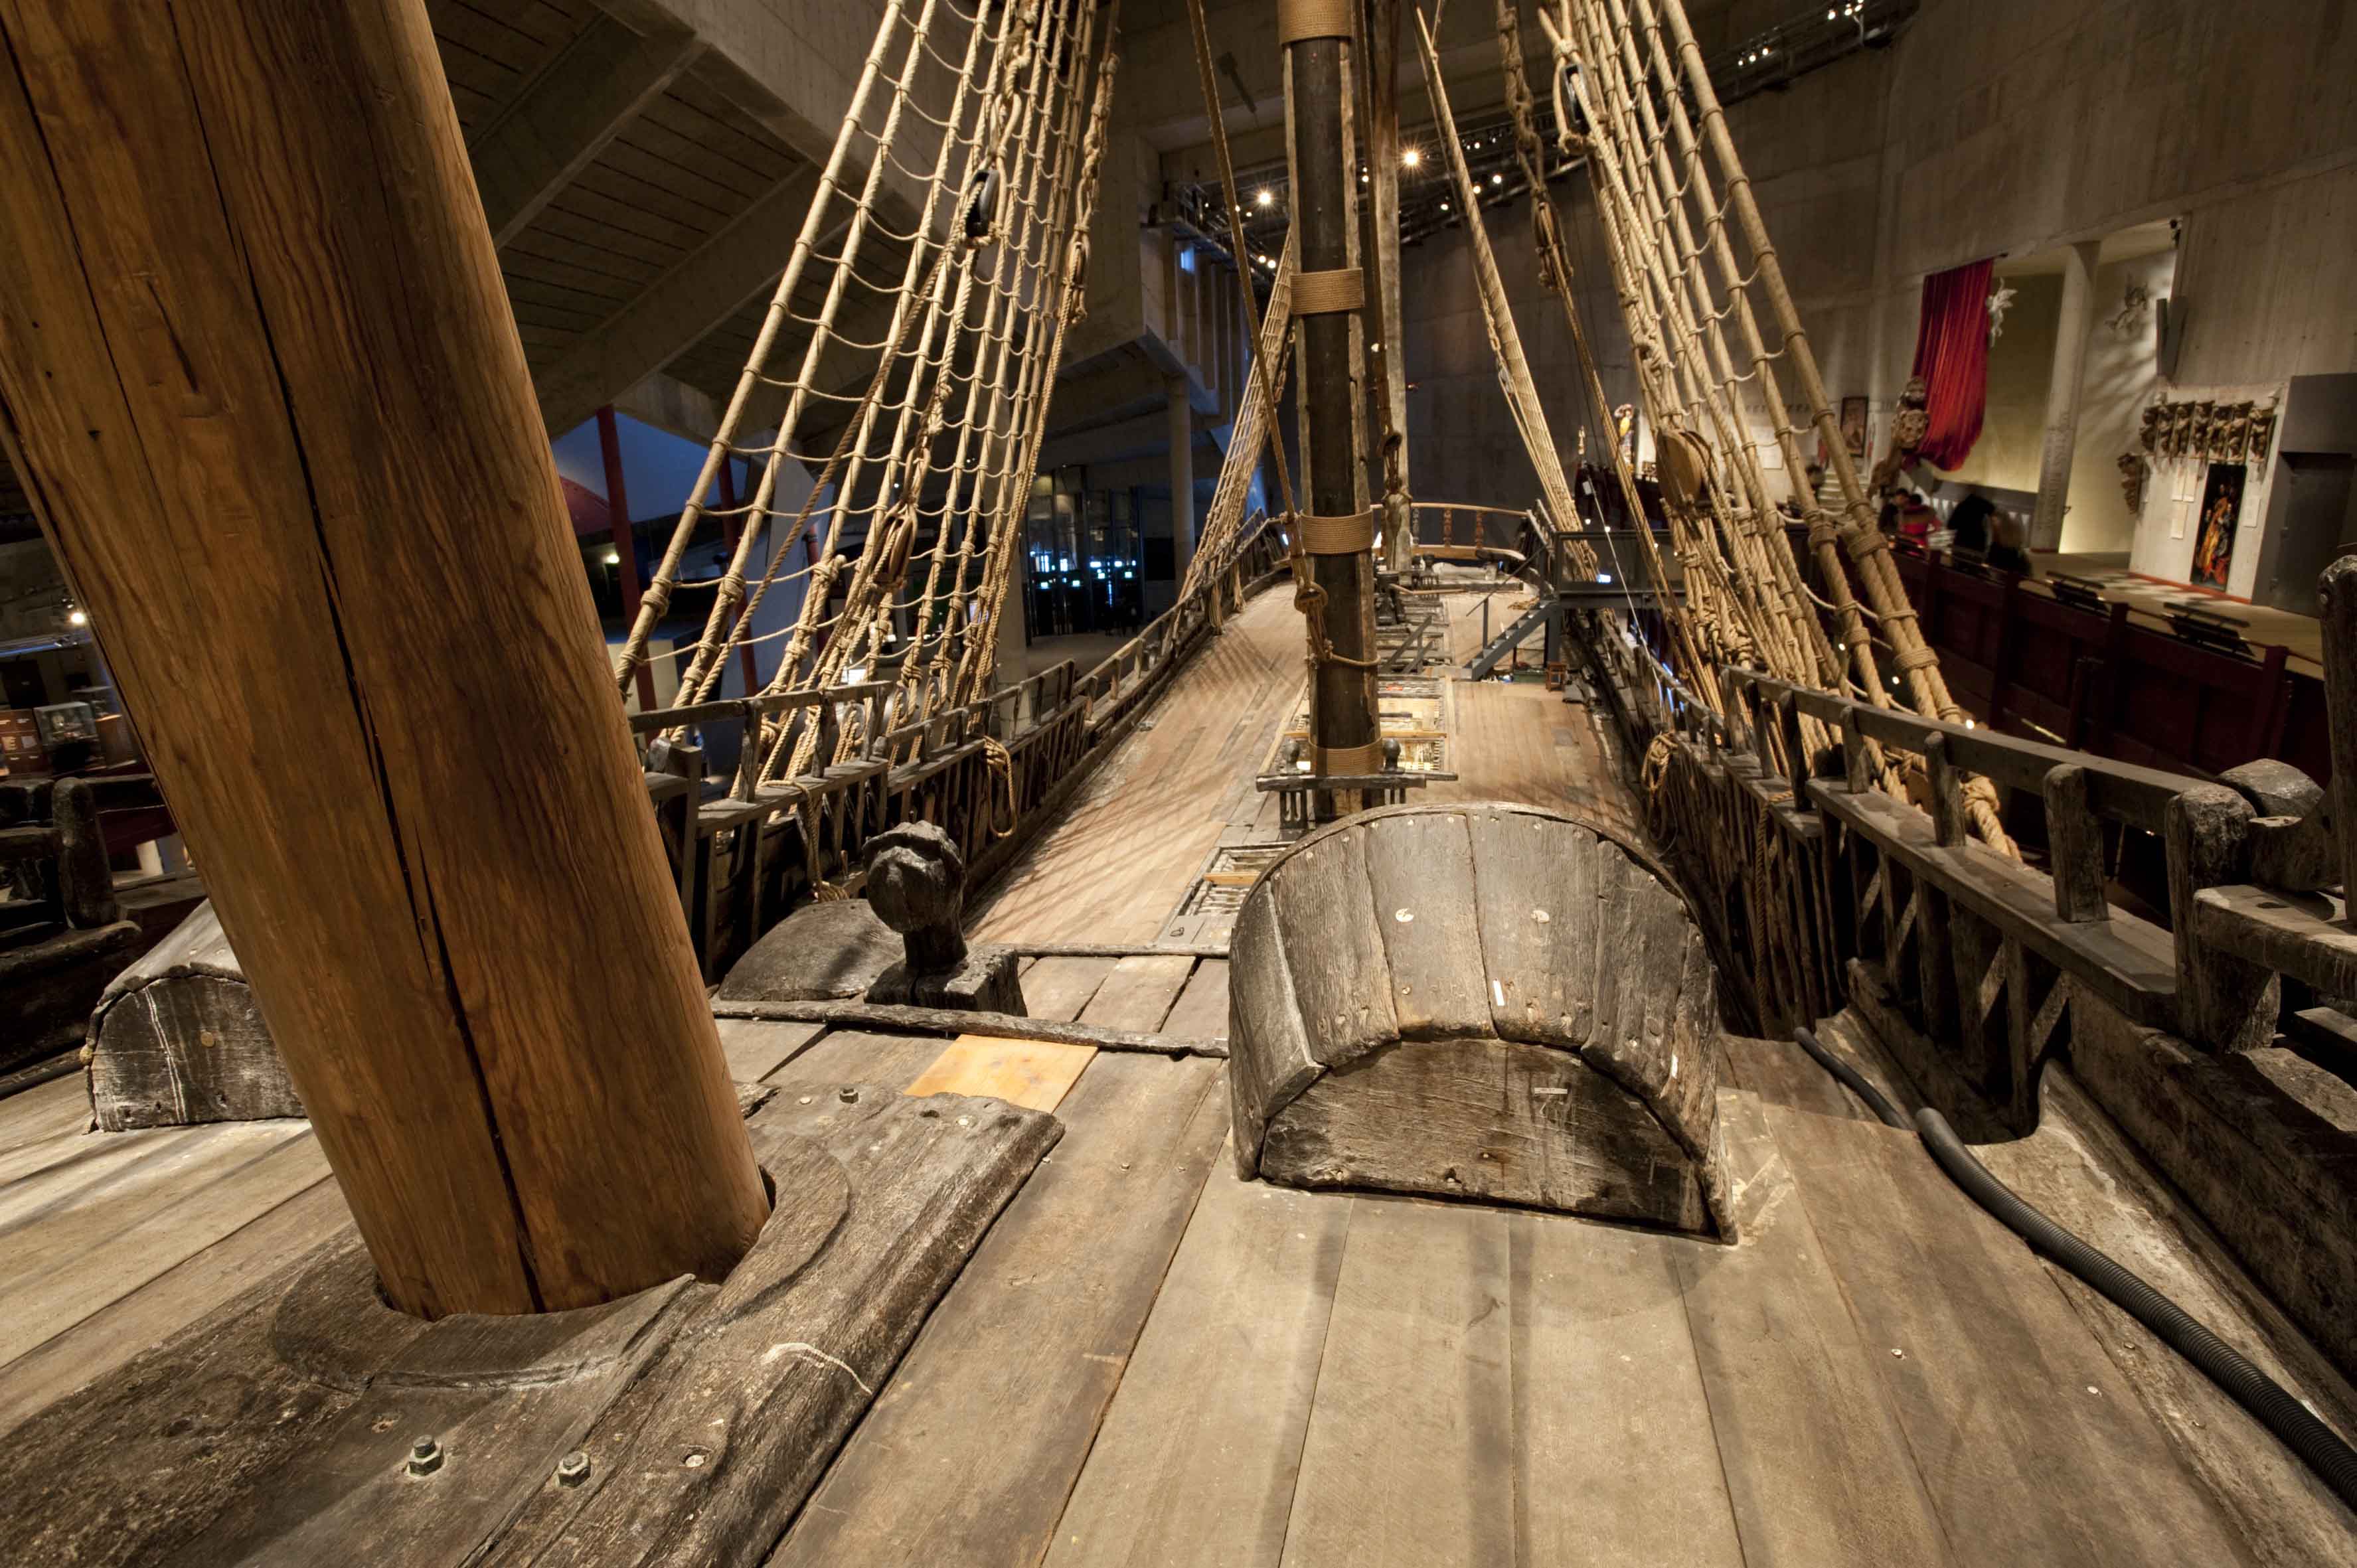 Палуба 7 букв. В трюме корабля Васа. Корабль vasa внутри. Капитанская каюта пиратского корабля 17 века. Палуба корабля.